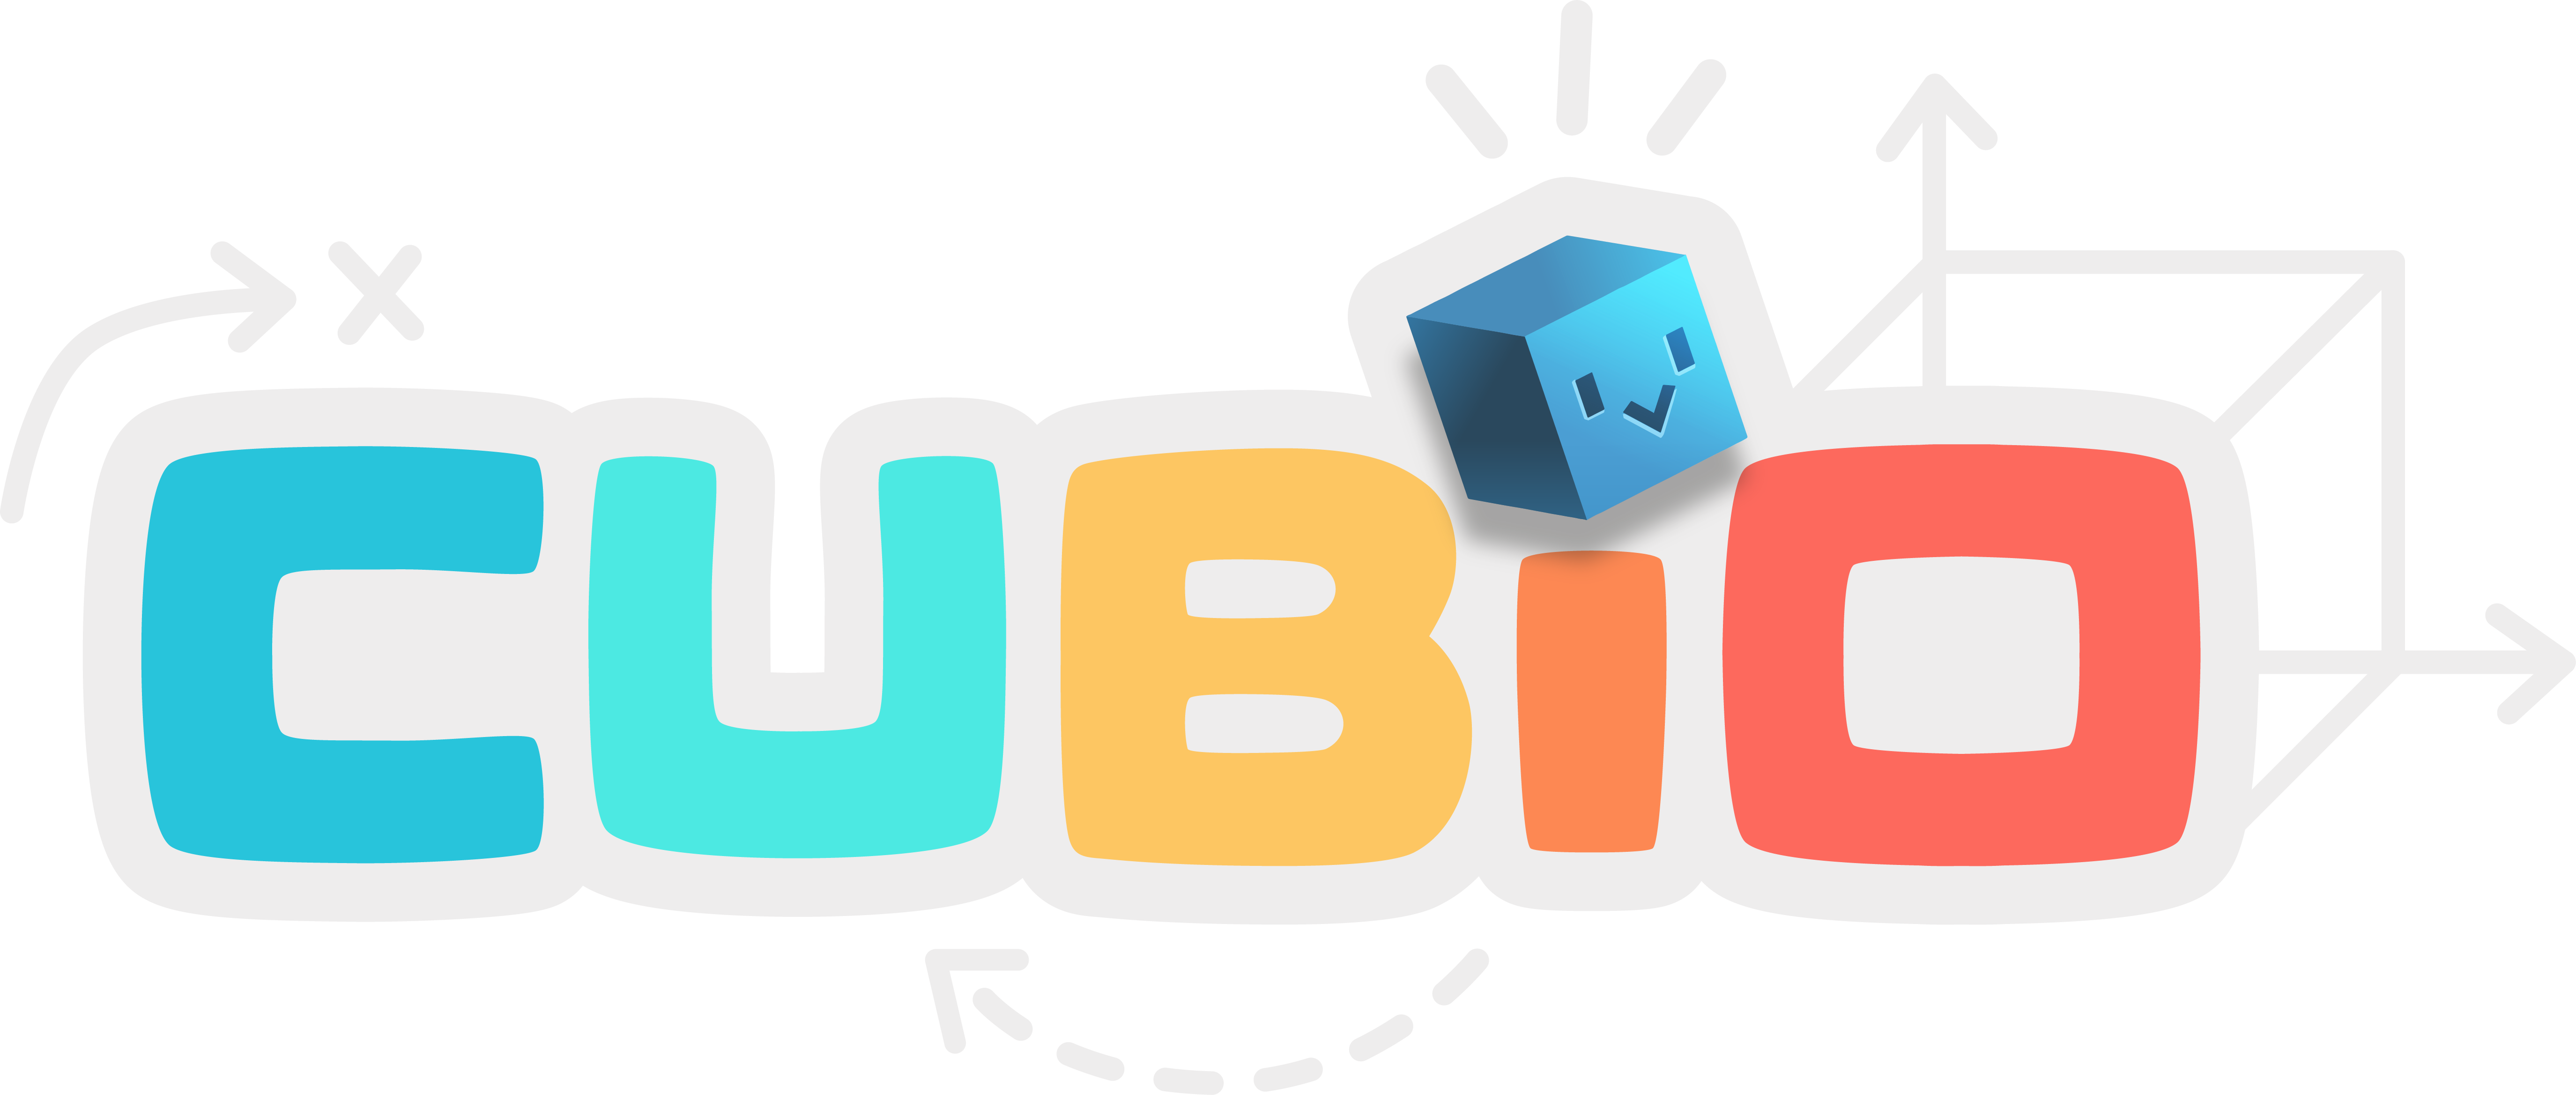 01 studio website logo cubio